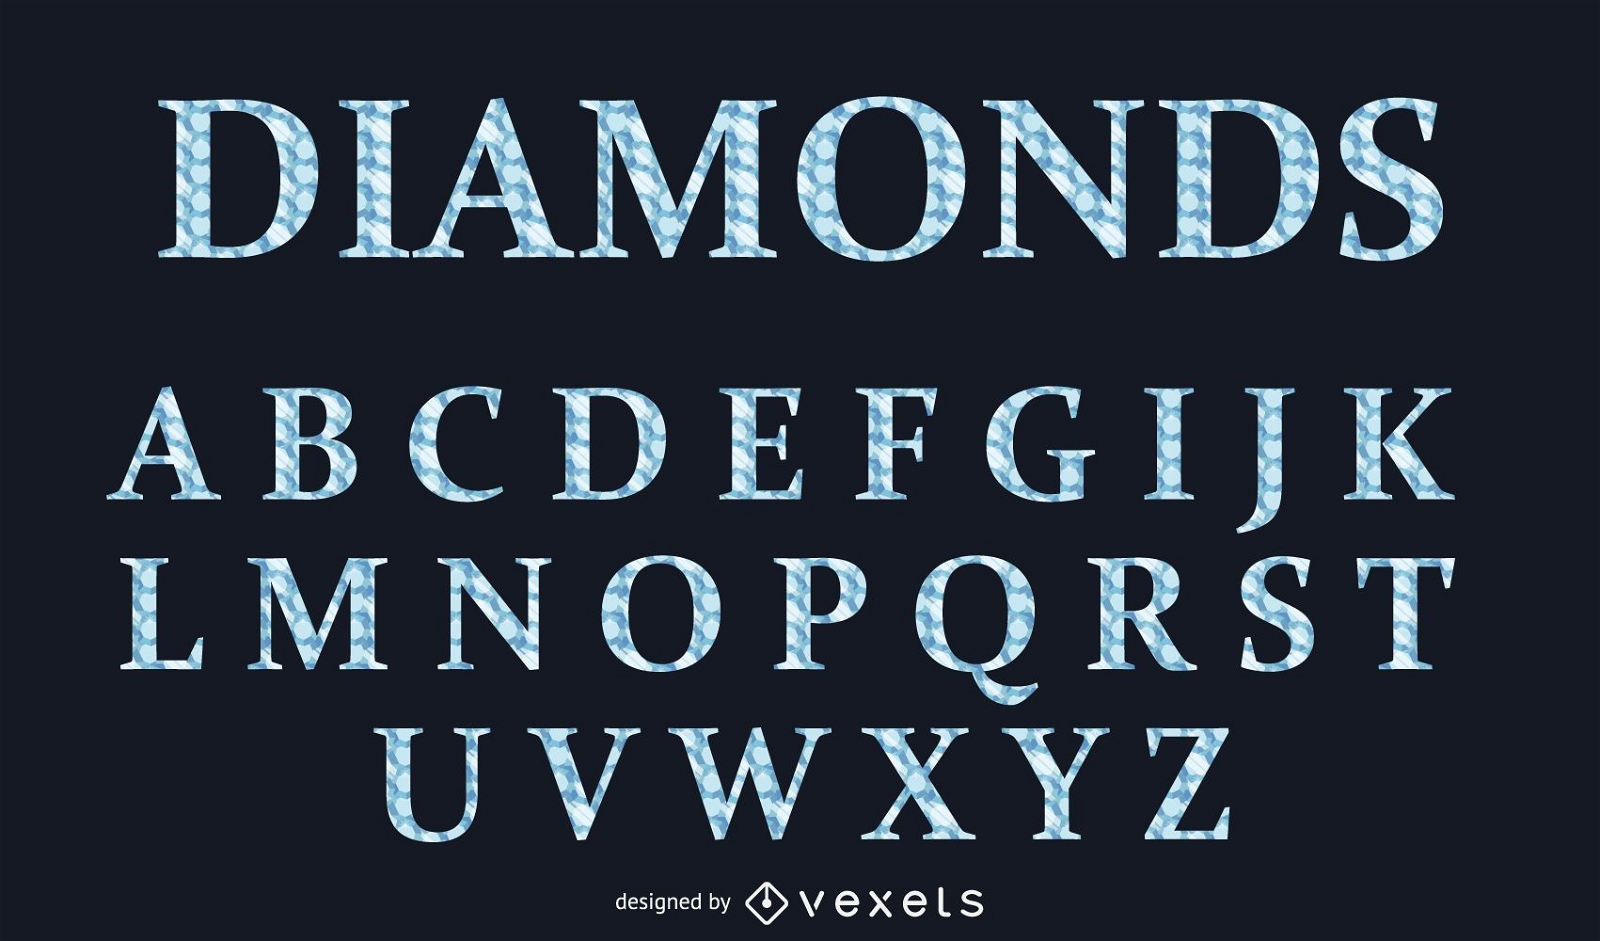 Tipo de letra alfabética do estilo diamante